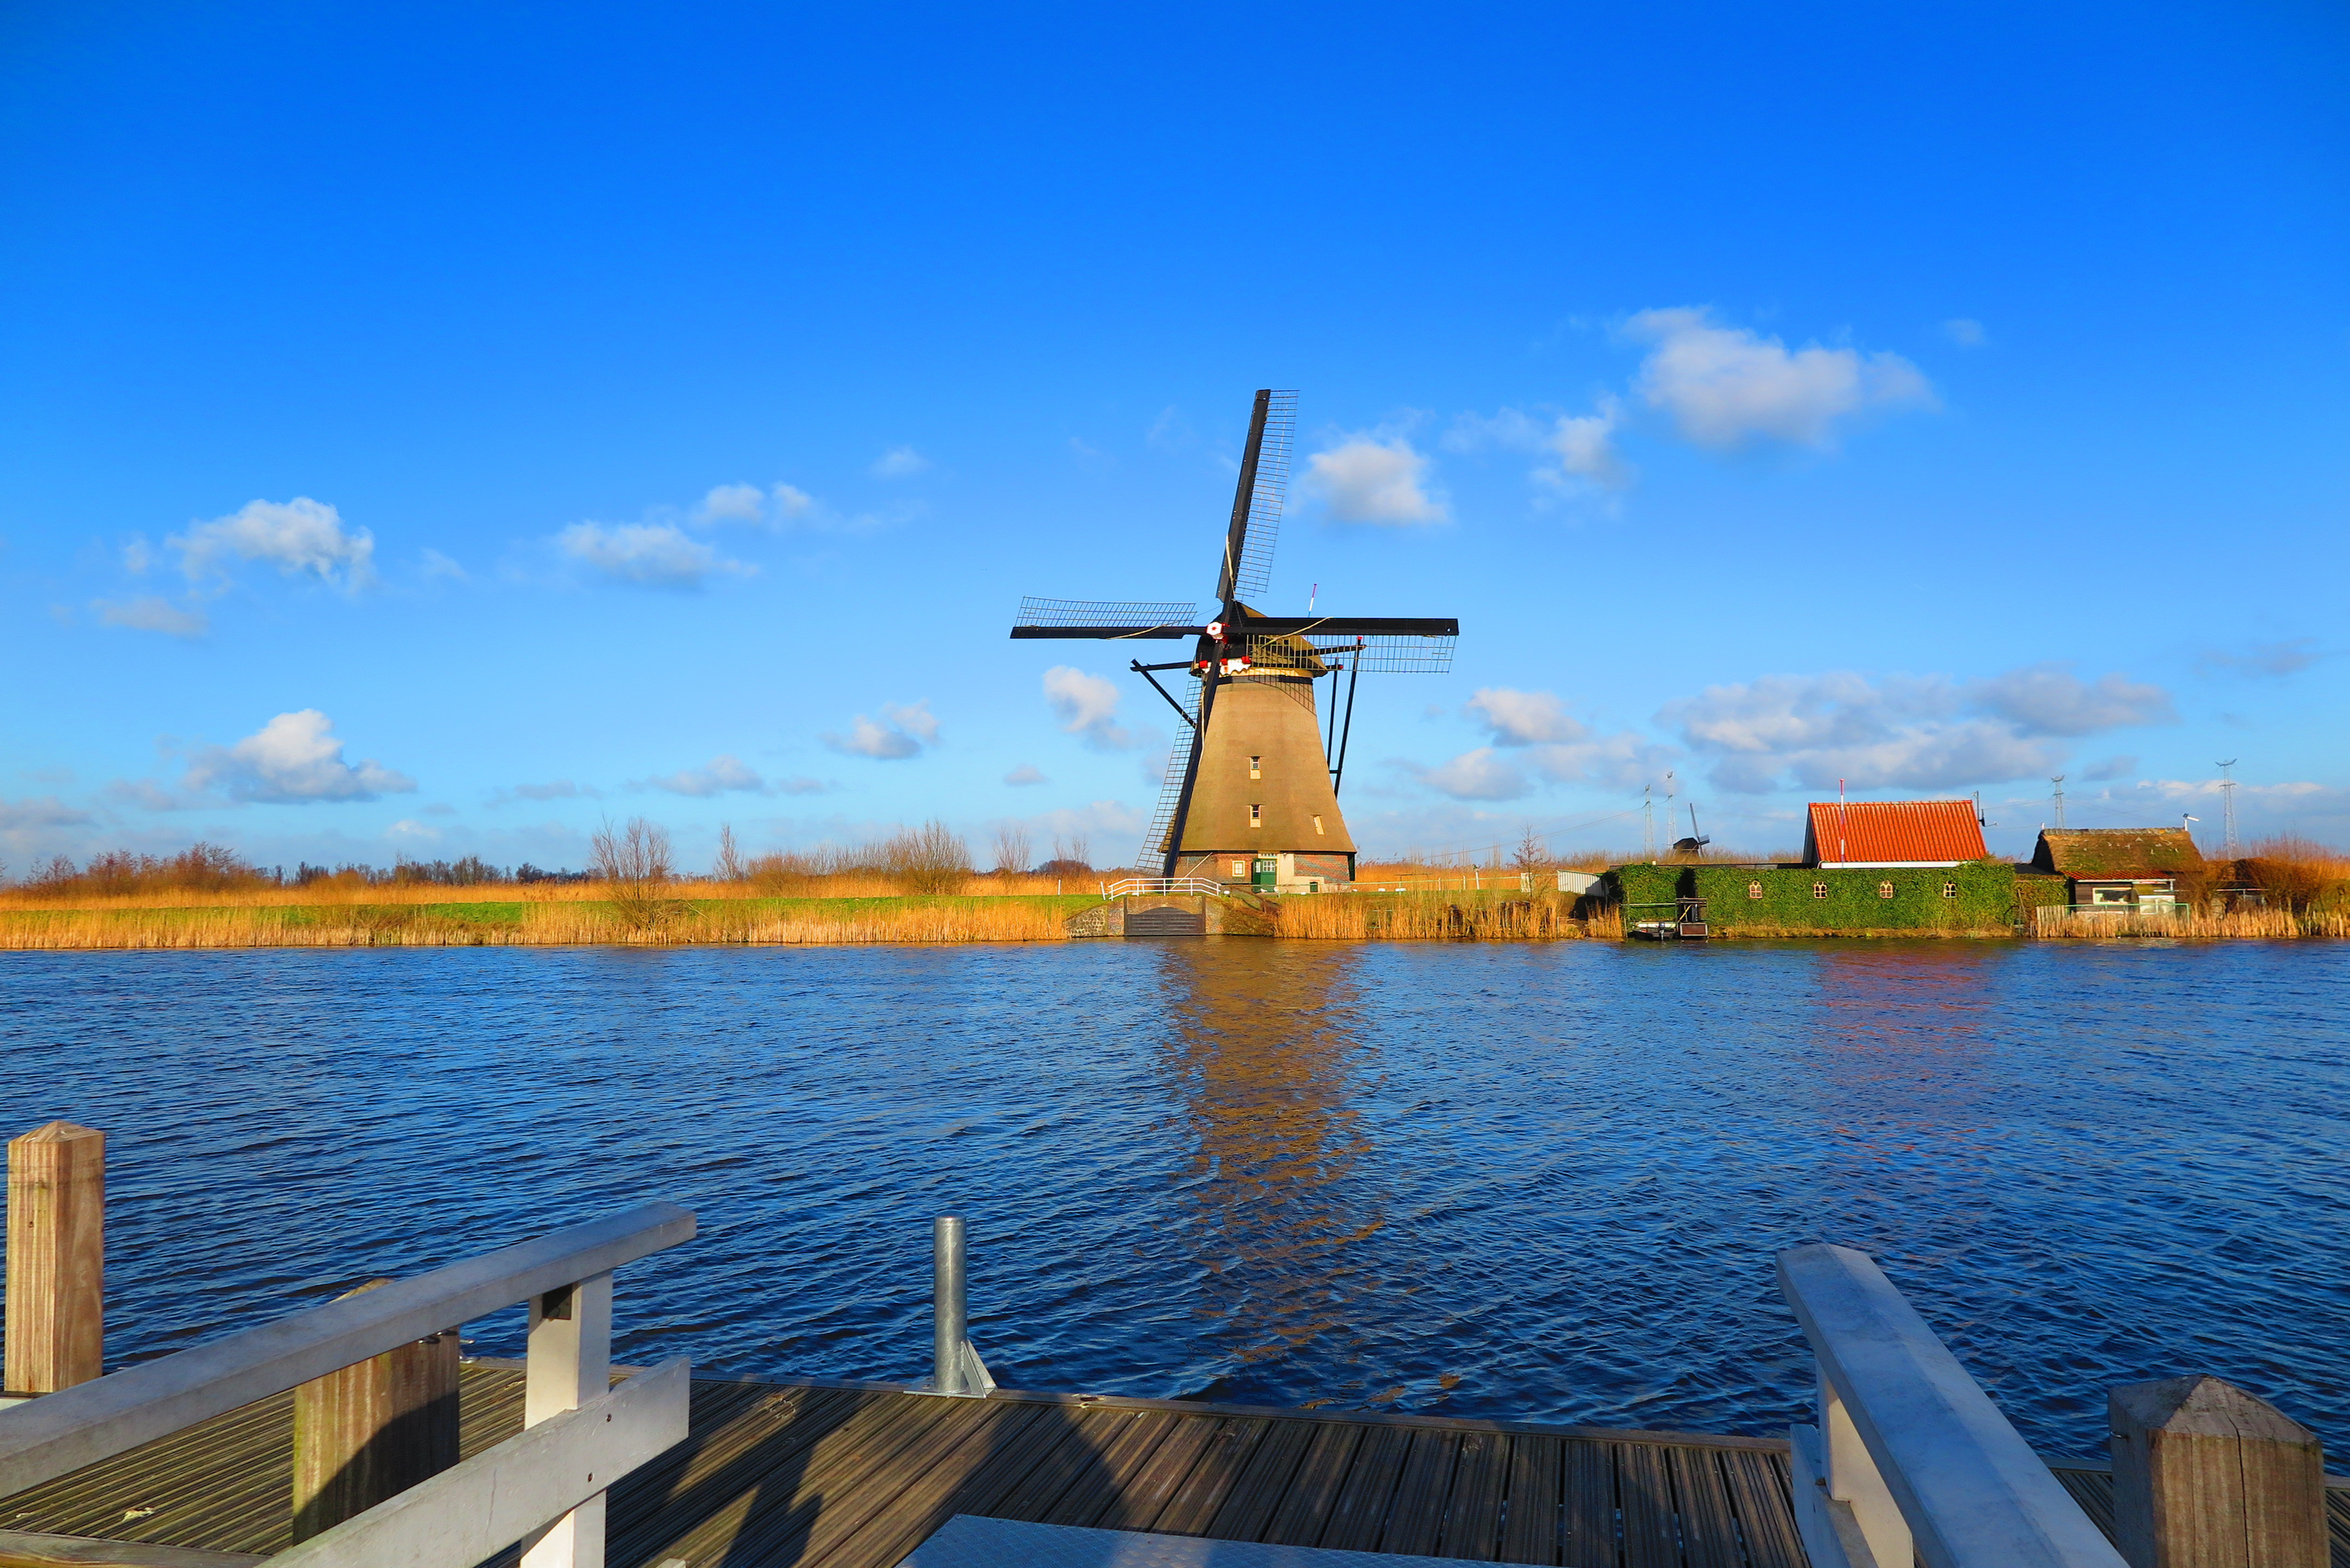 荷兰风车图片大全-荷兰郁金香|荷兰风车视频|荷兰风车图片高清晰|荷兰风车村